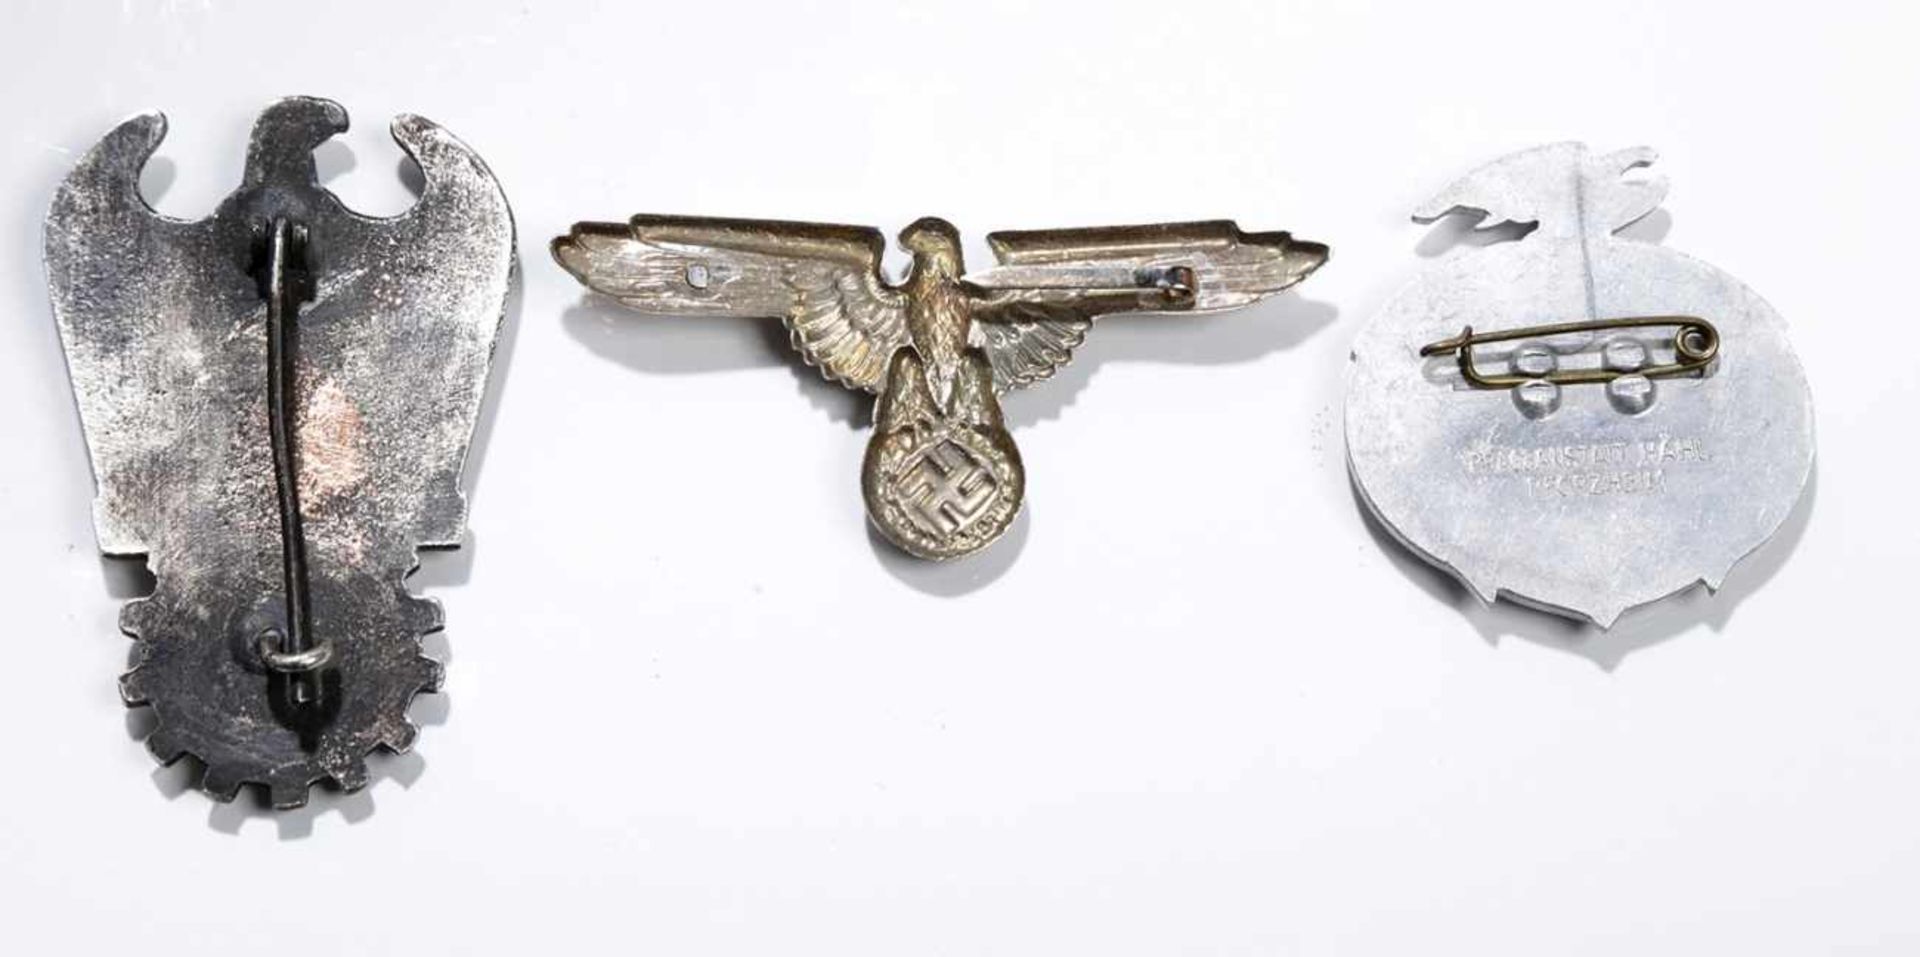 Abzeichen, 3.Reich, Konvolut 3-tlg., Seefahrt ist Not 1935, Mützenabzeichen Adler, DrFritz Todt - Bild 2 aus 2